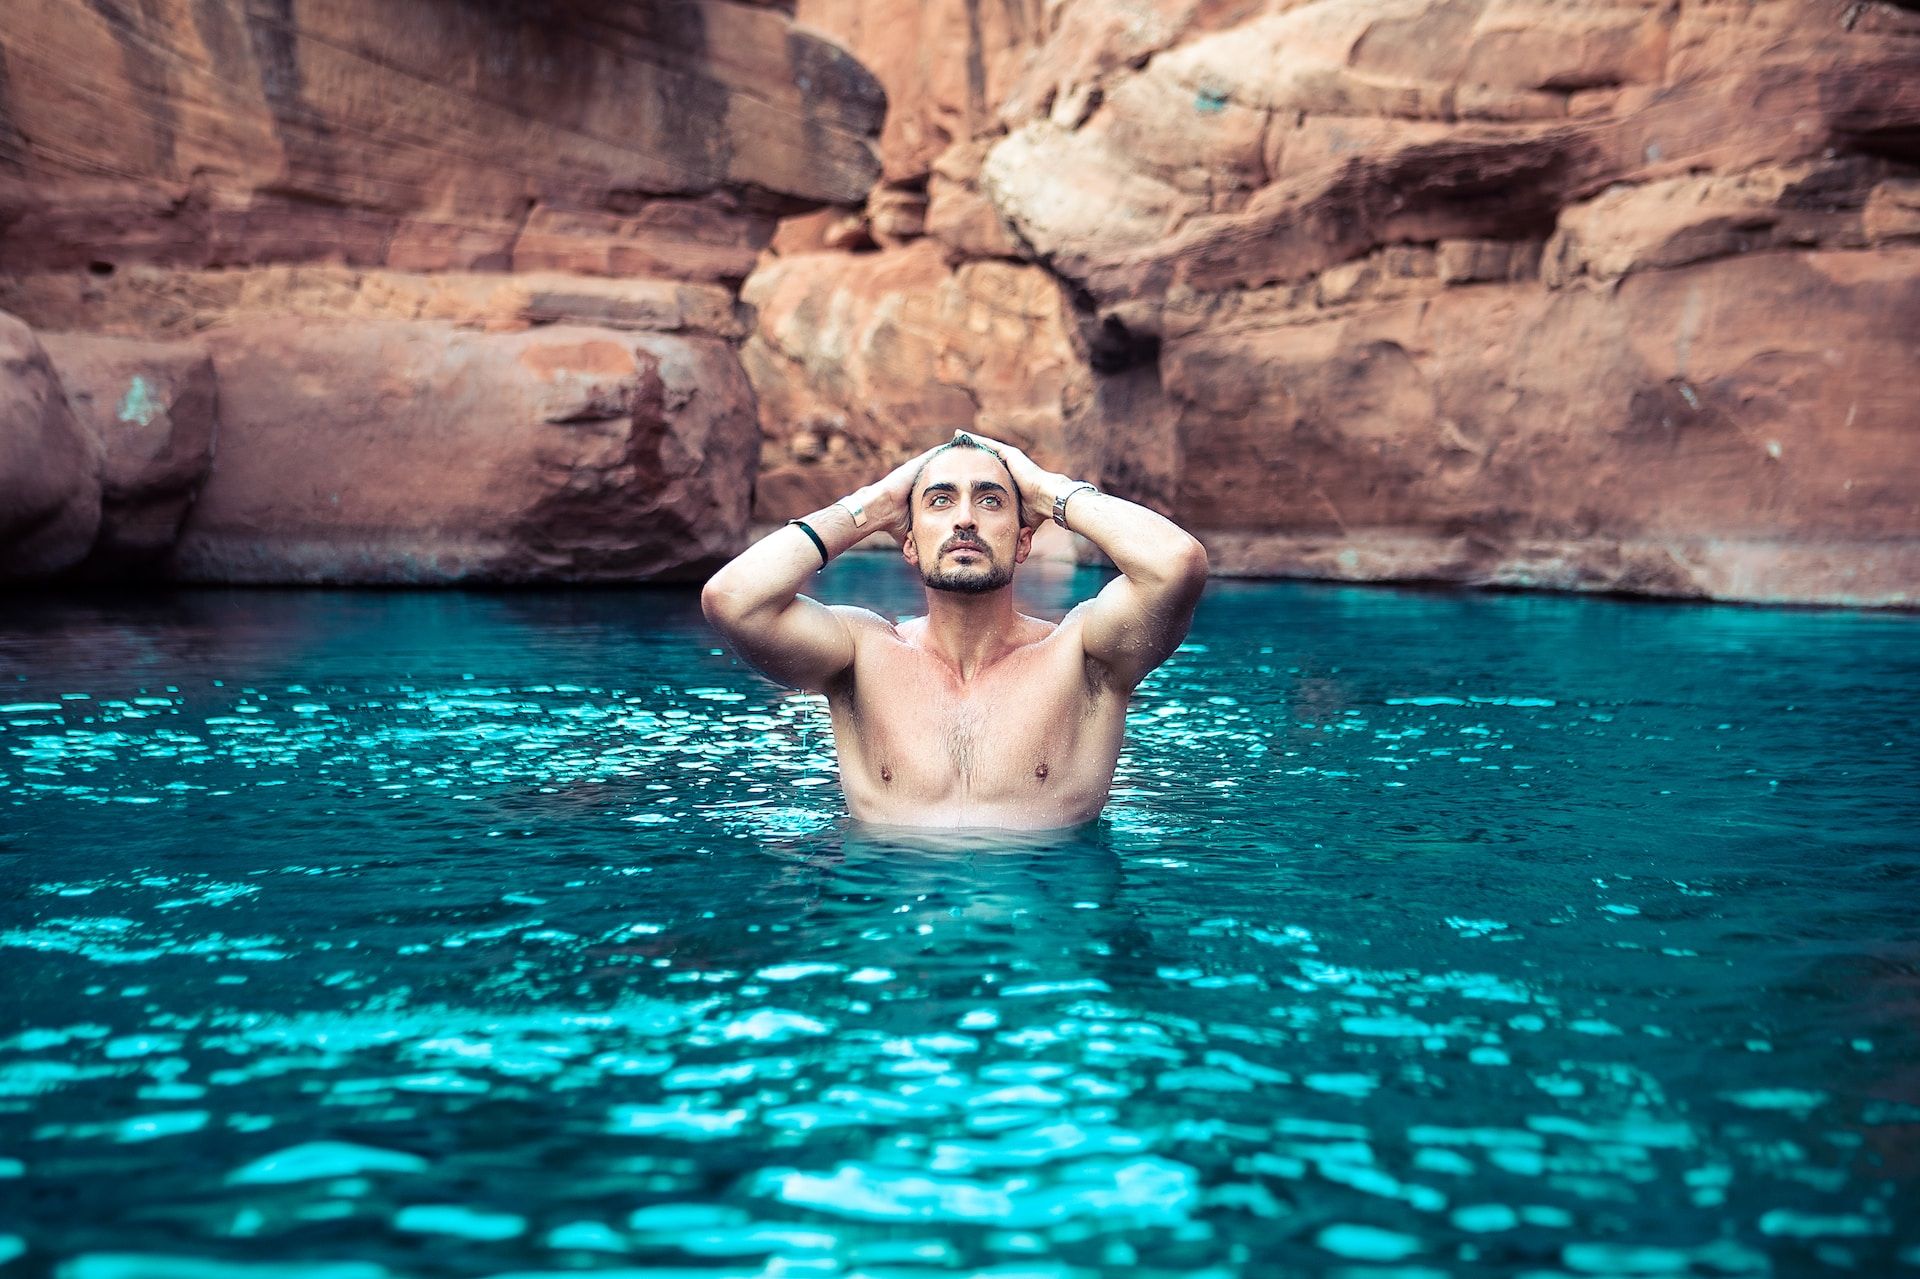 Un homme se baignant dans l'eau - Thanks to Ameer Basheer sur https://unsplash.com/fr/photos/homme-aux-seins-nus-sur-le-plan-deau-UKB7zPVswIo